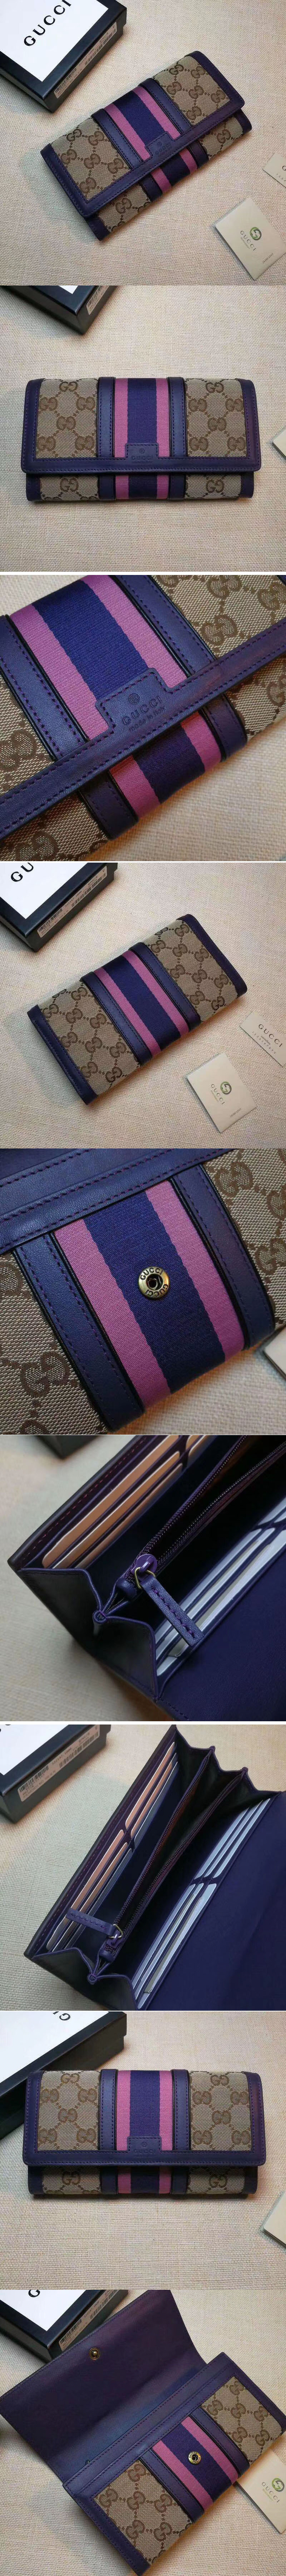 Replica Gucci 409440 GG Supreme Canvas Leather Continental Wallet Purple